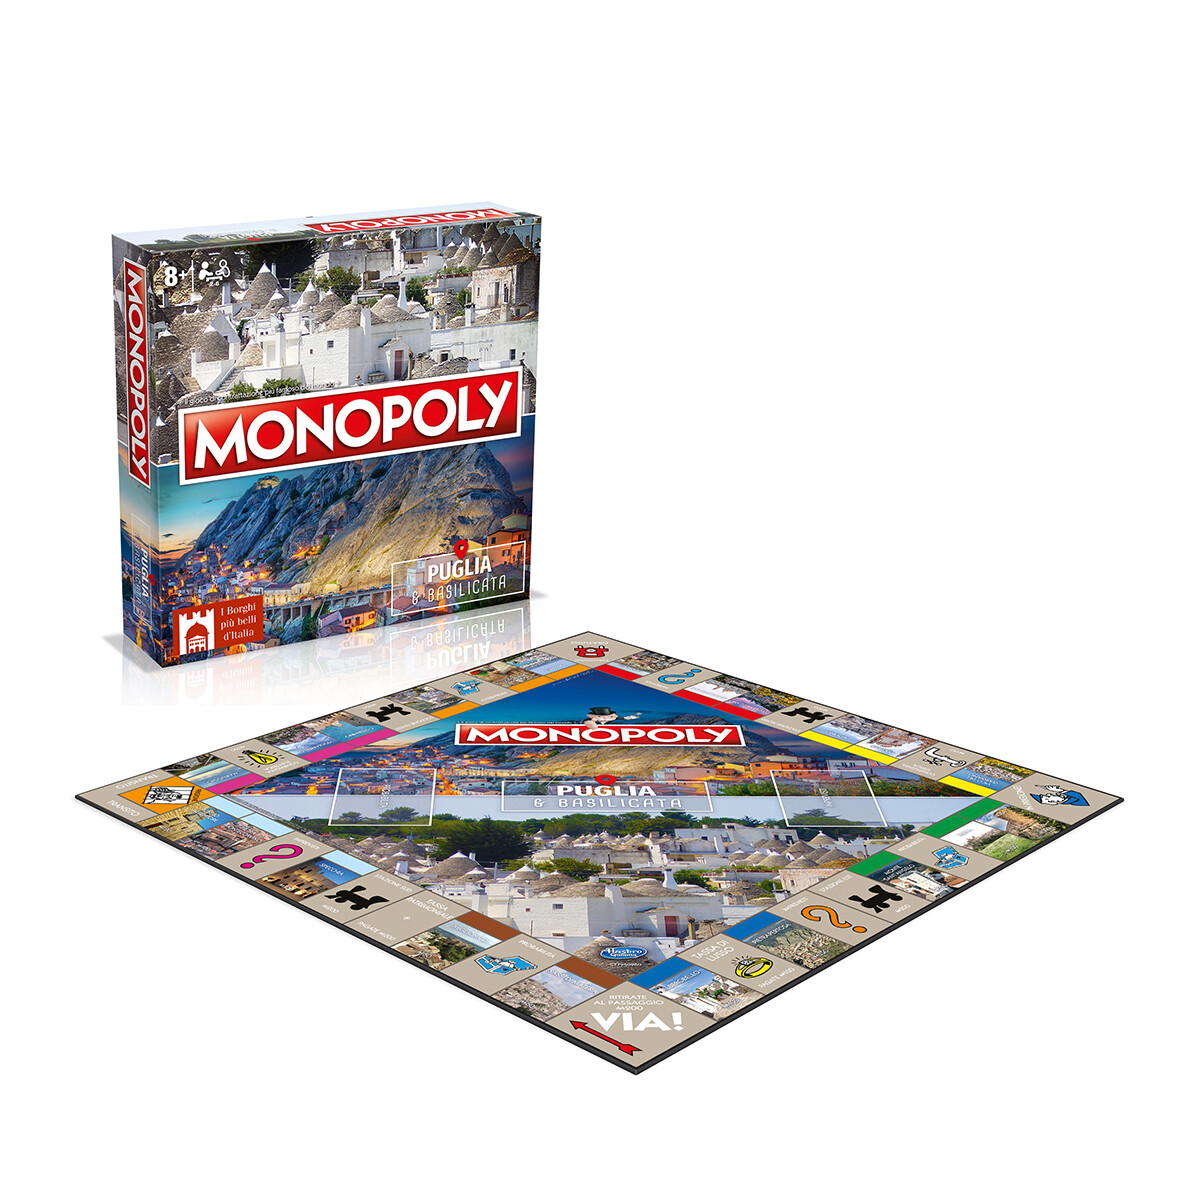 Monopoly - i borghi più belli d'italia - edizione puglia & basilicata - MONOPOLY